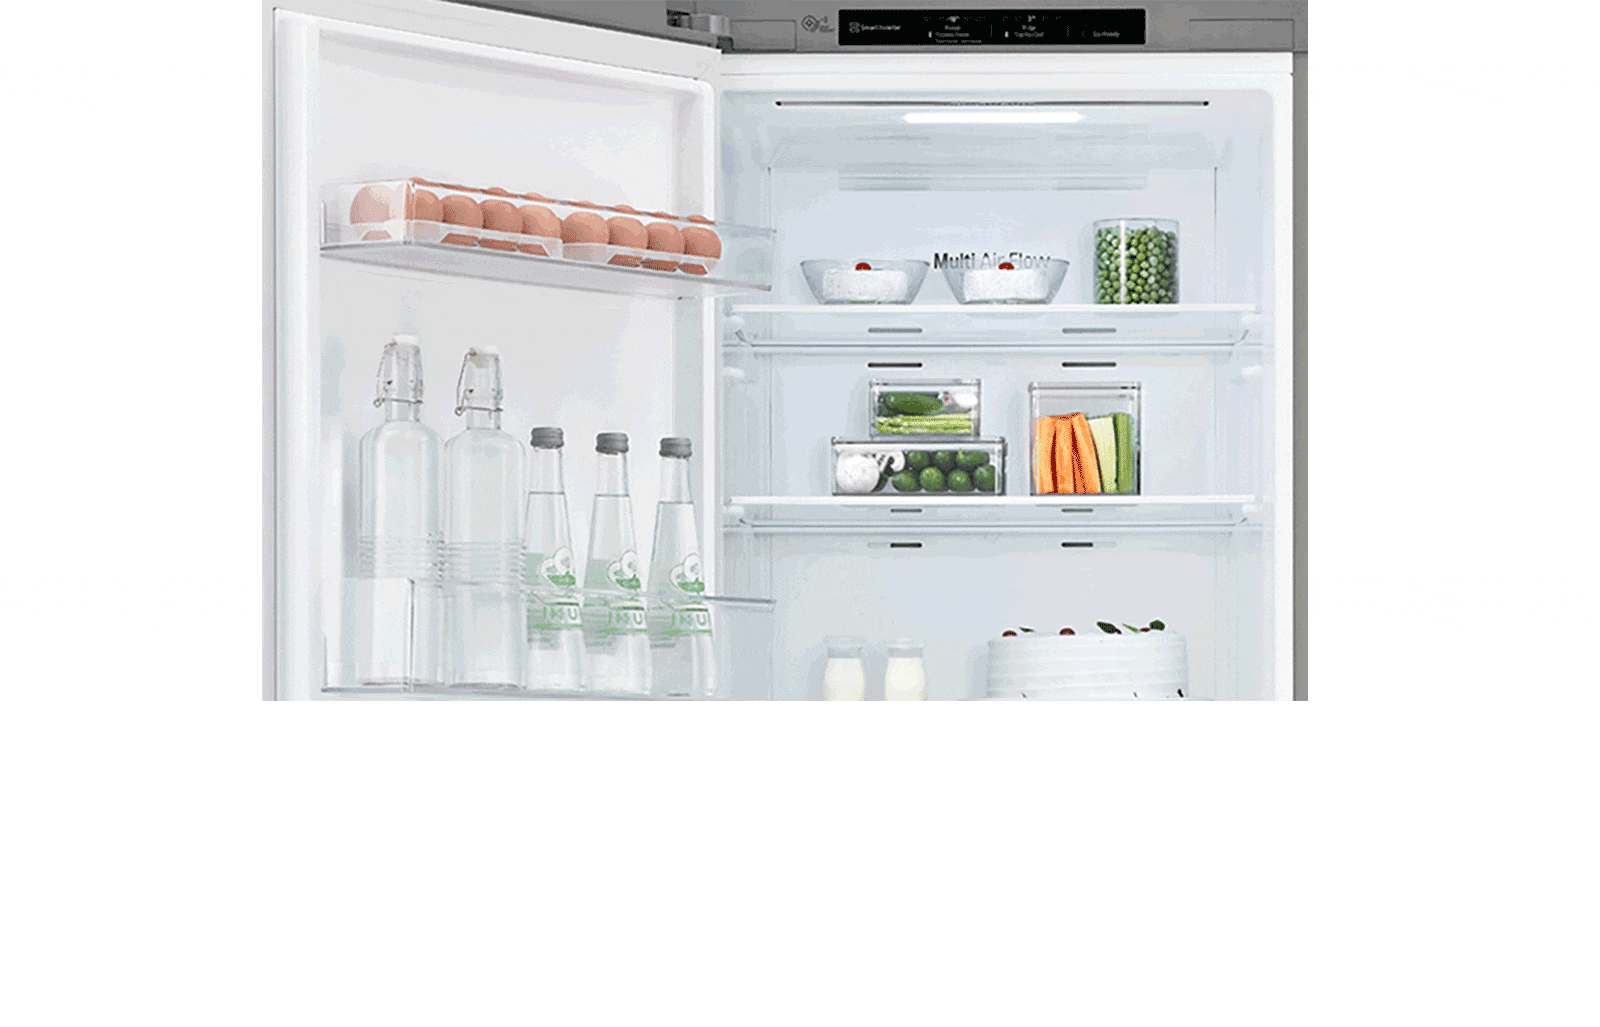 A hűtőszekrény az ajtóval balra nyílik a képen, a gyakoribb jobboldali nyitás helyett, hogy érzékeltesse a testreszabhatóságát. 